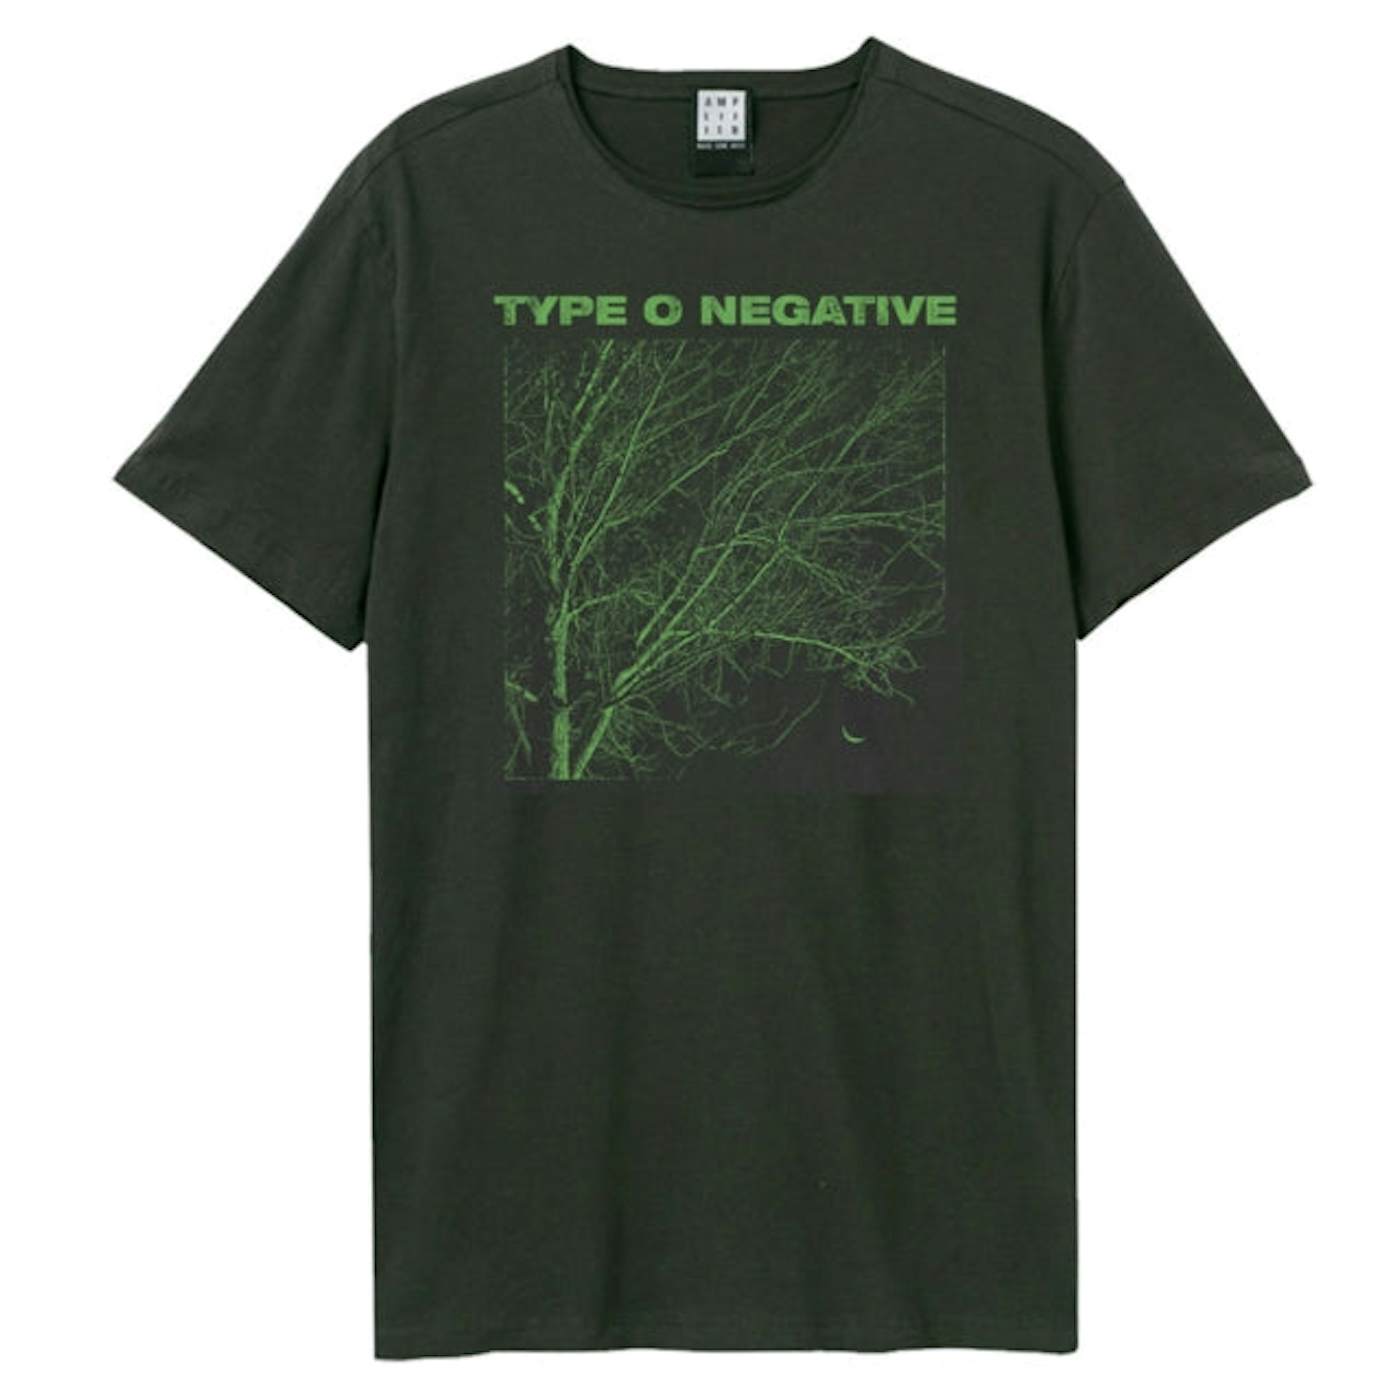 Type O Negative Shirt Type O Negative T-shirt Type O Negative Sweatshirt  Type O Negative Tee Type O Negative Vintage Type O Negative Unisex -   Canada